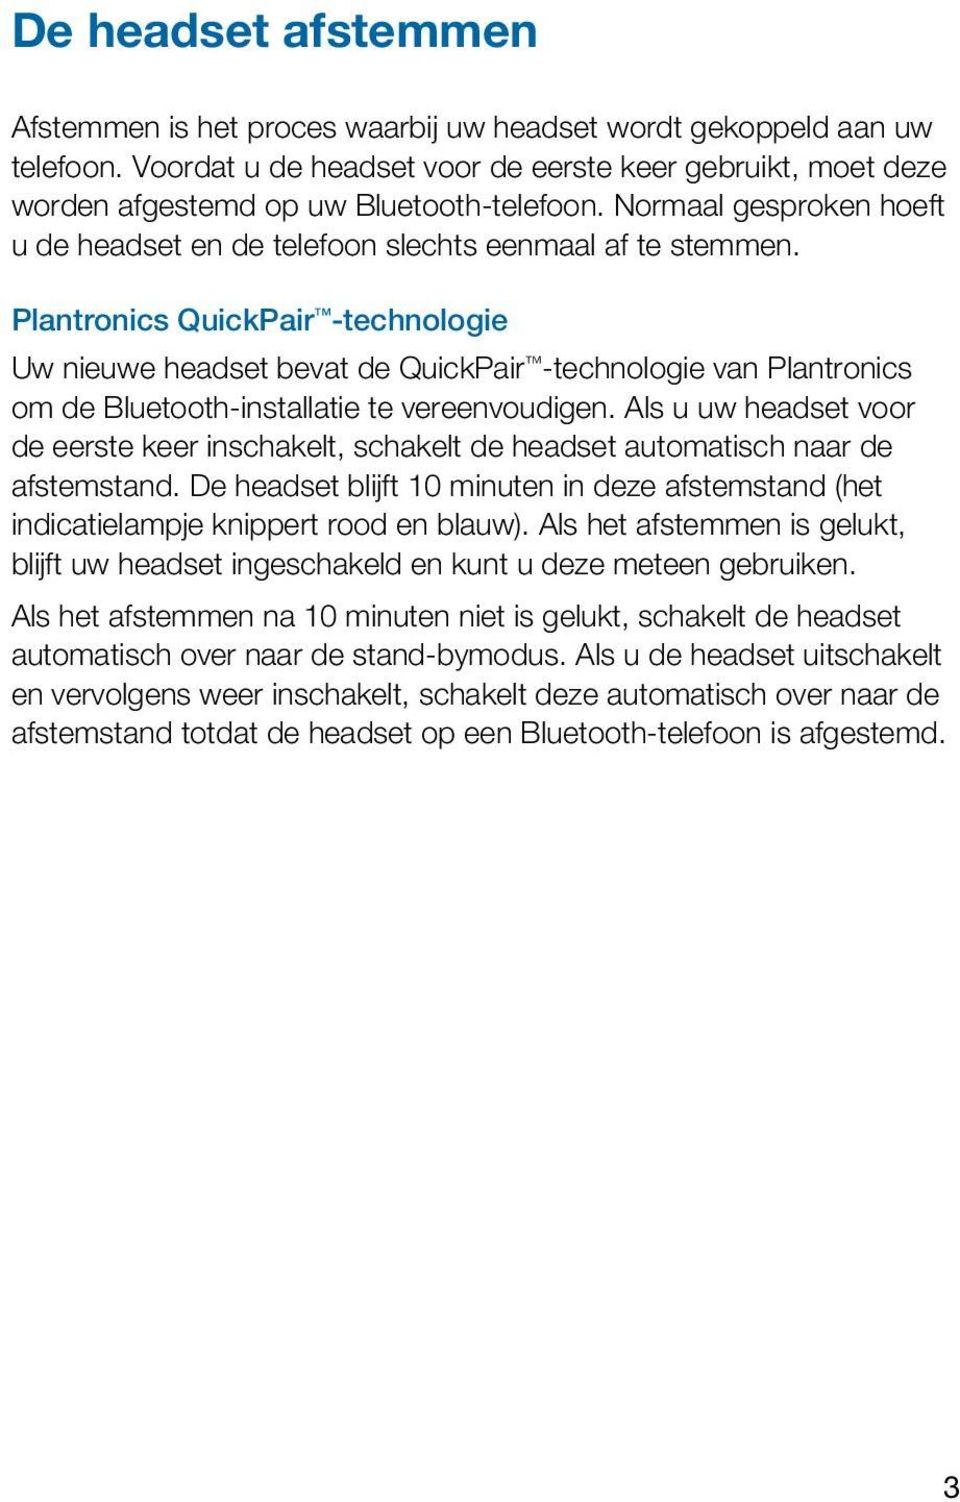 Plantronics QuickPair -technologie Uw nieuwe headset bevat de QuickPair -technologie van Plantronics om de Bluetooth-installatie te vereenvoudigen.